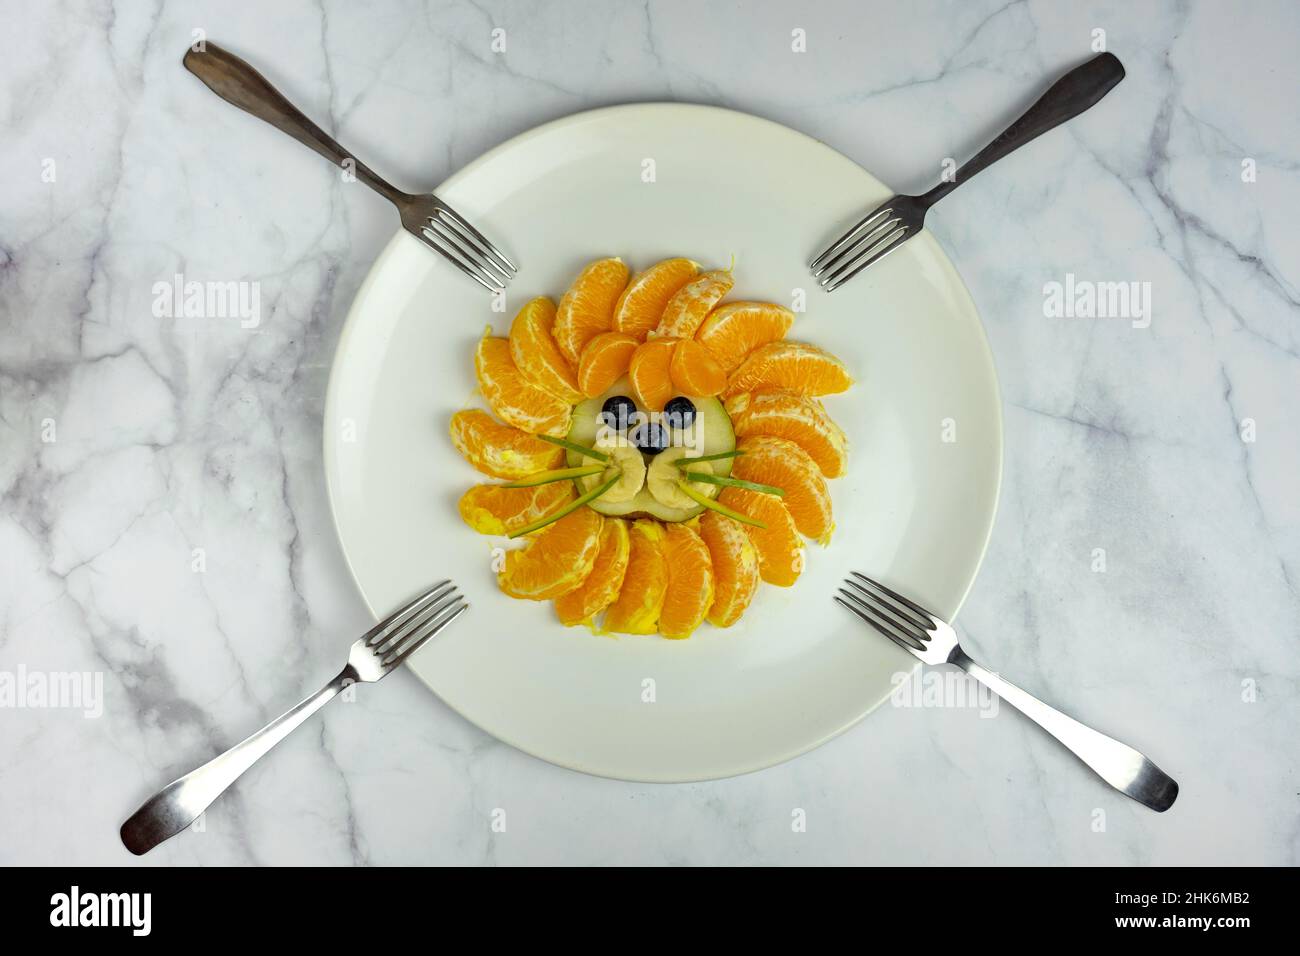 divertente composizione del viso del leone con frutti come il mirtillo d'arancio su un tavolo di marmo con forcelle Foto Stock